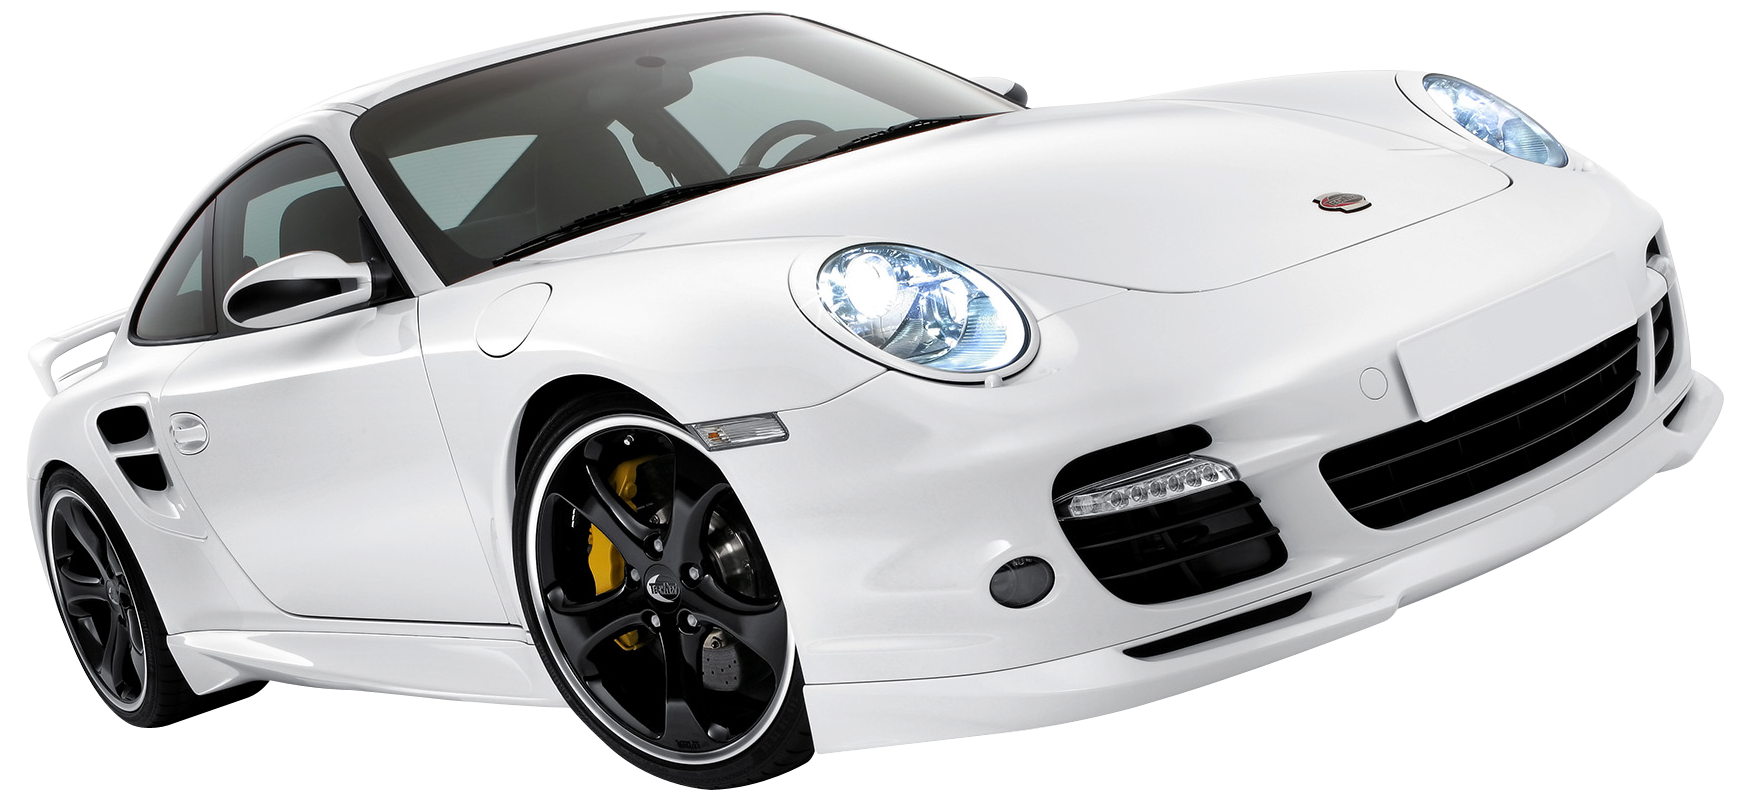 Porsche car PNG image